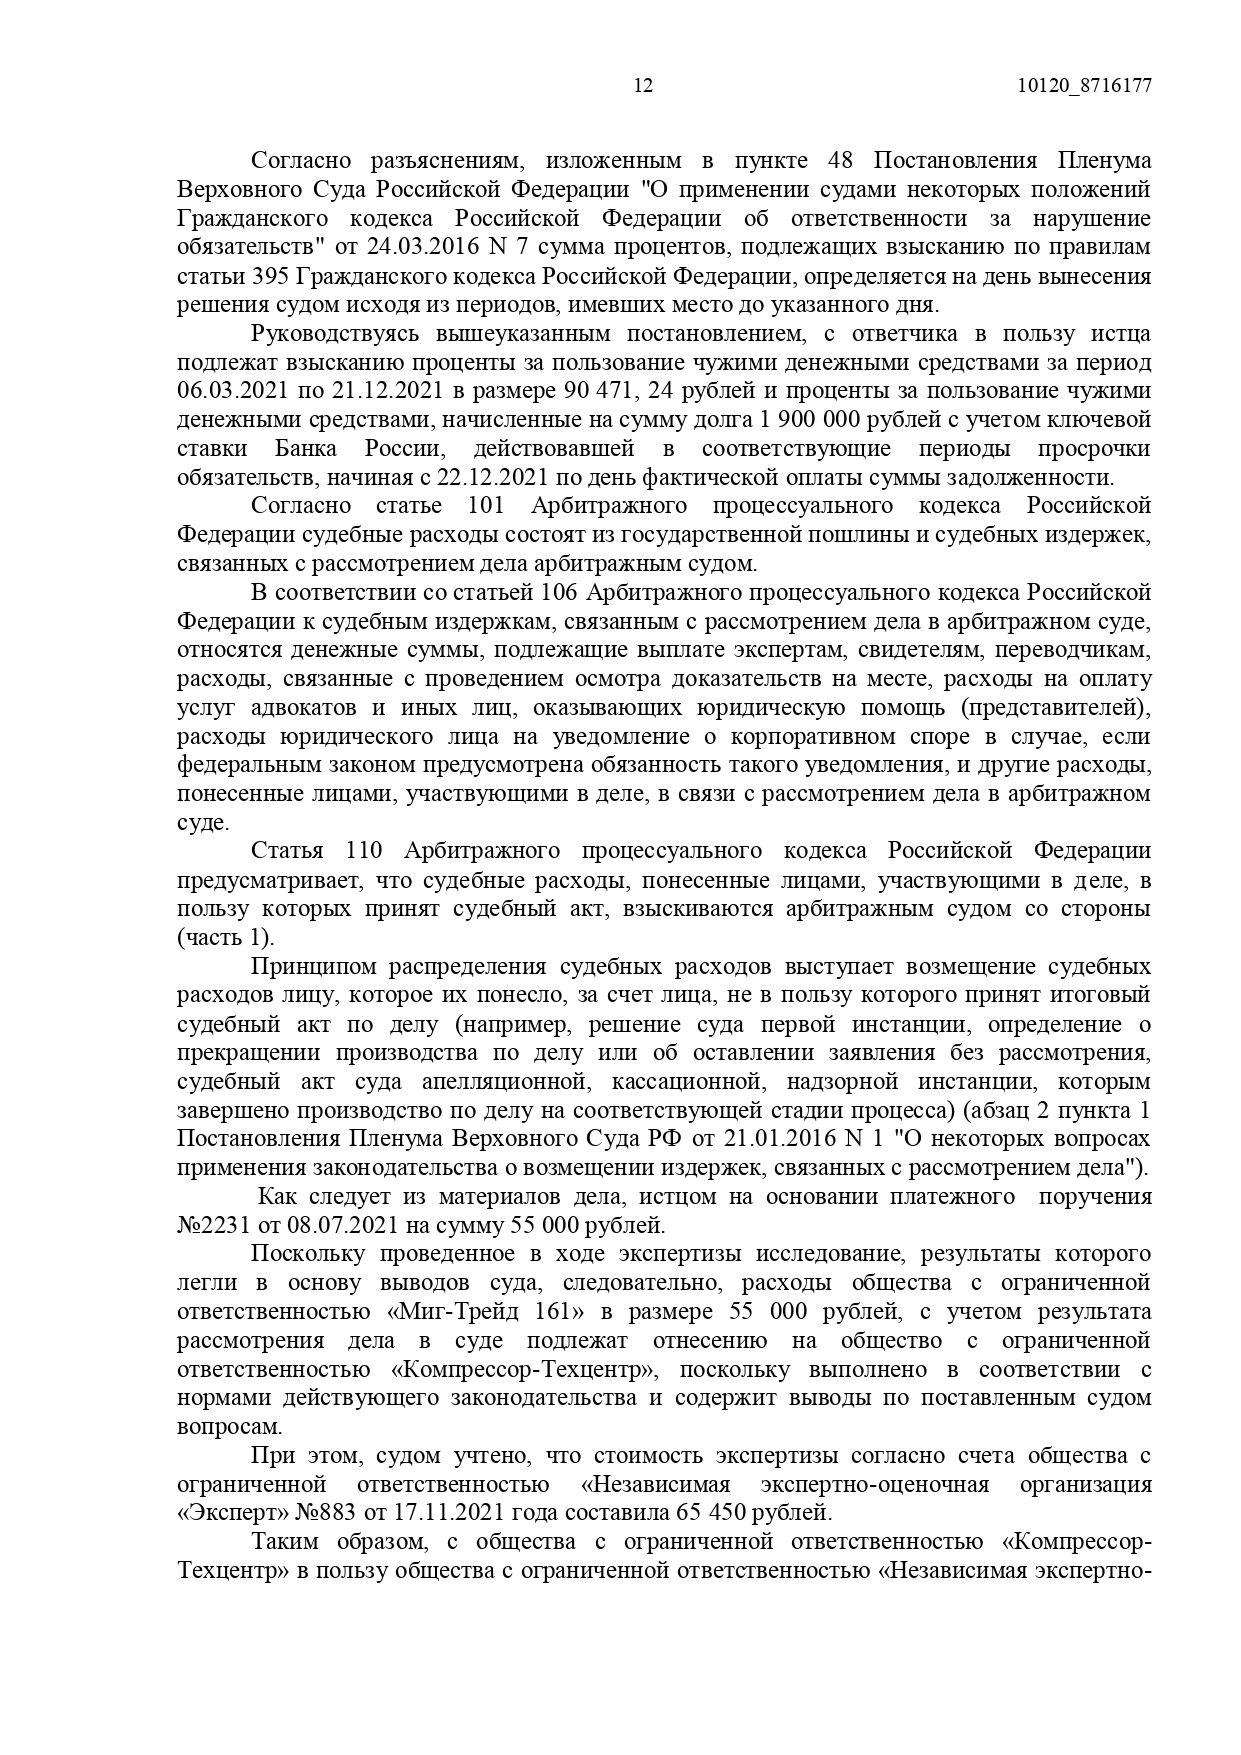 Арбитражный суд Ростовской области вынес решение по делу №А53-6305/2021